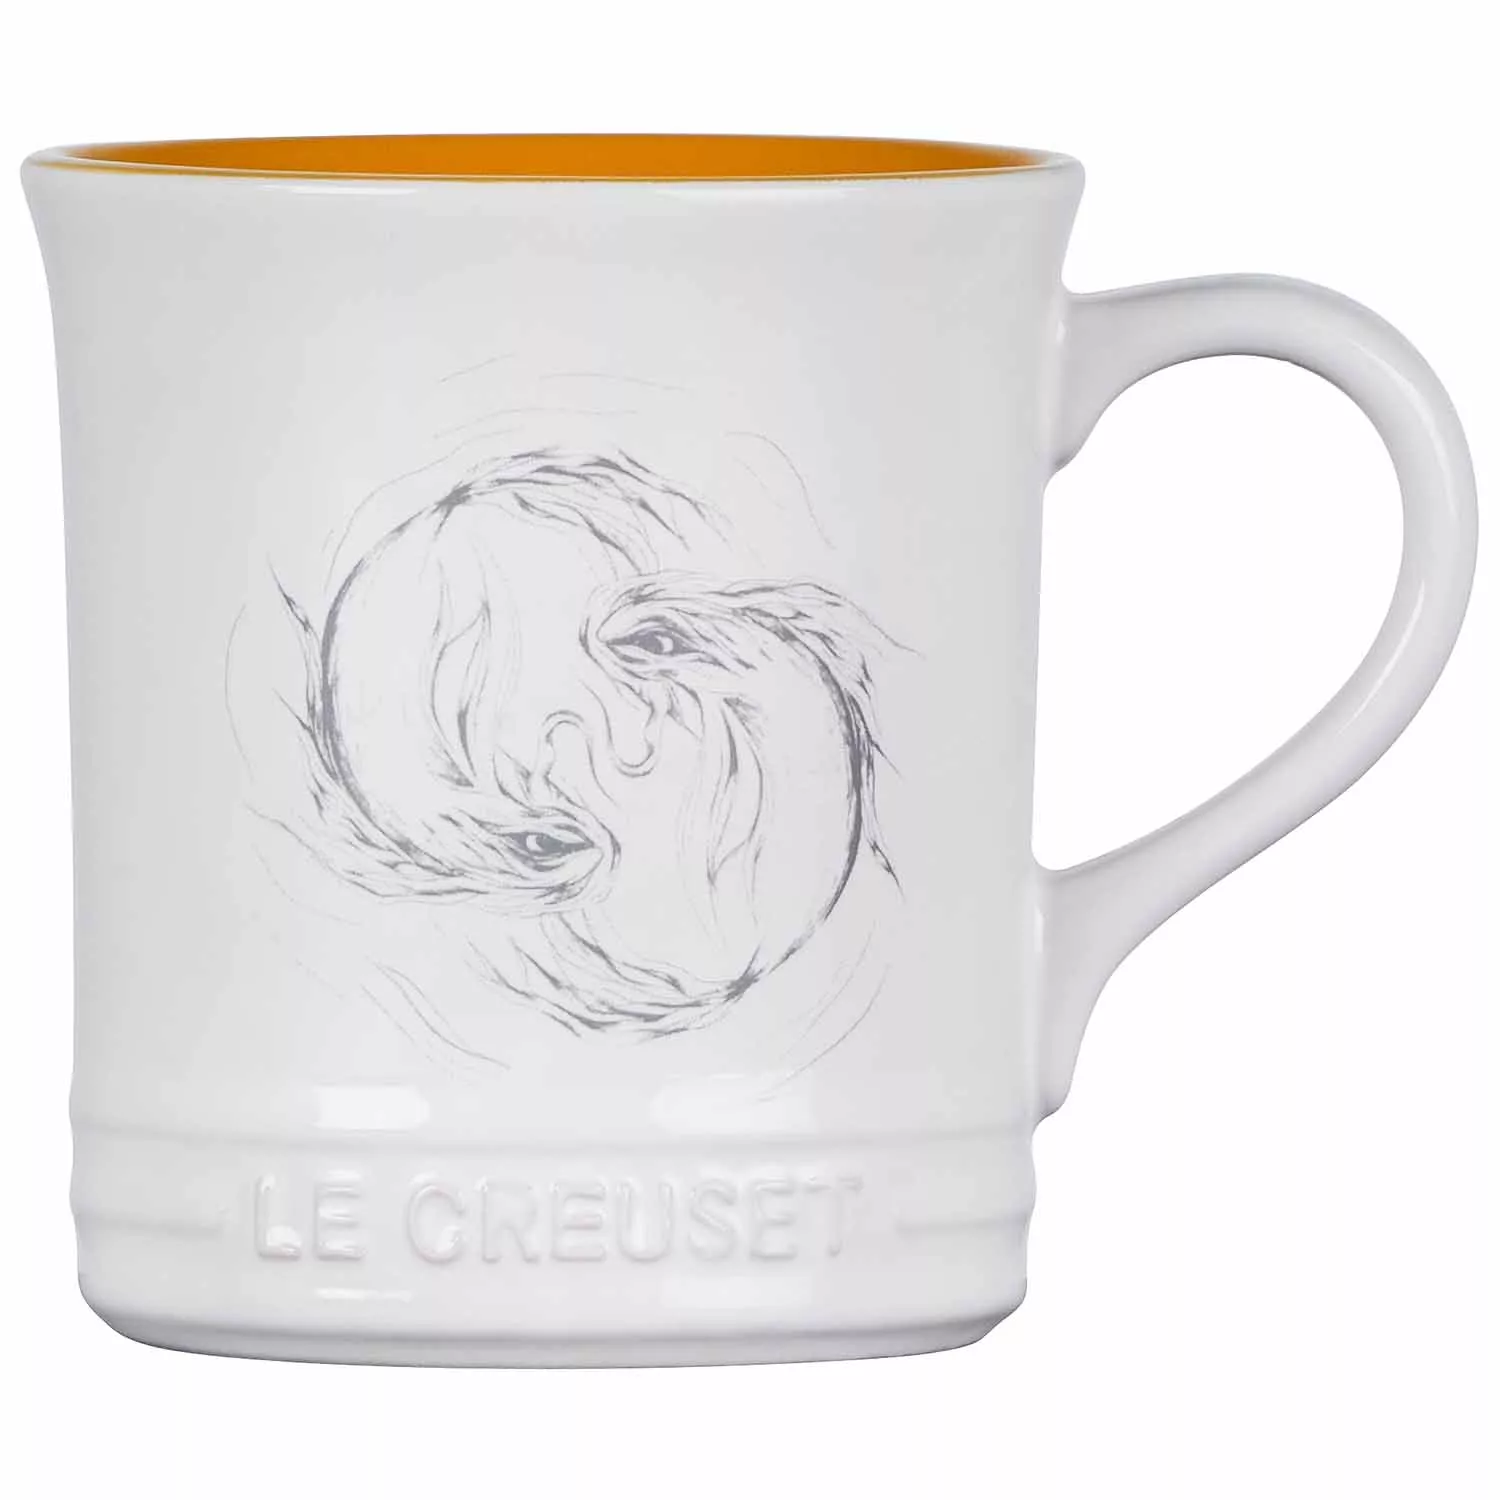 Le Creuset Zodiac Mug, 14 oz.